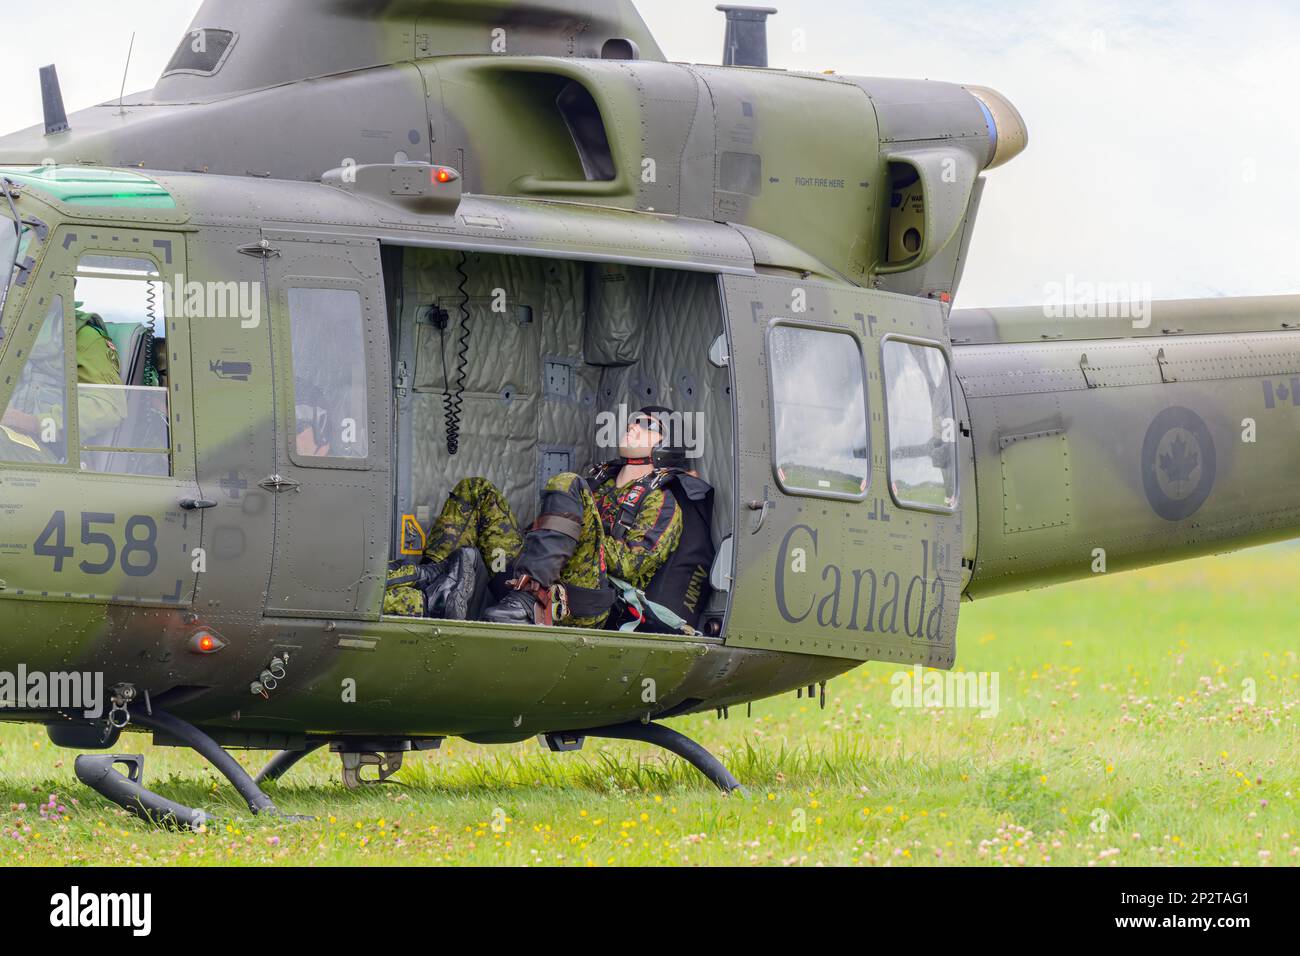 Moncton, NB, Kanada - 23. August 2014: Soldat macht ein Nickerchen in einem Griffon-Hubschrauber. Der Hubschrauber ist im Gras und die Seitentür ist offen. Stockfoto